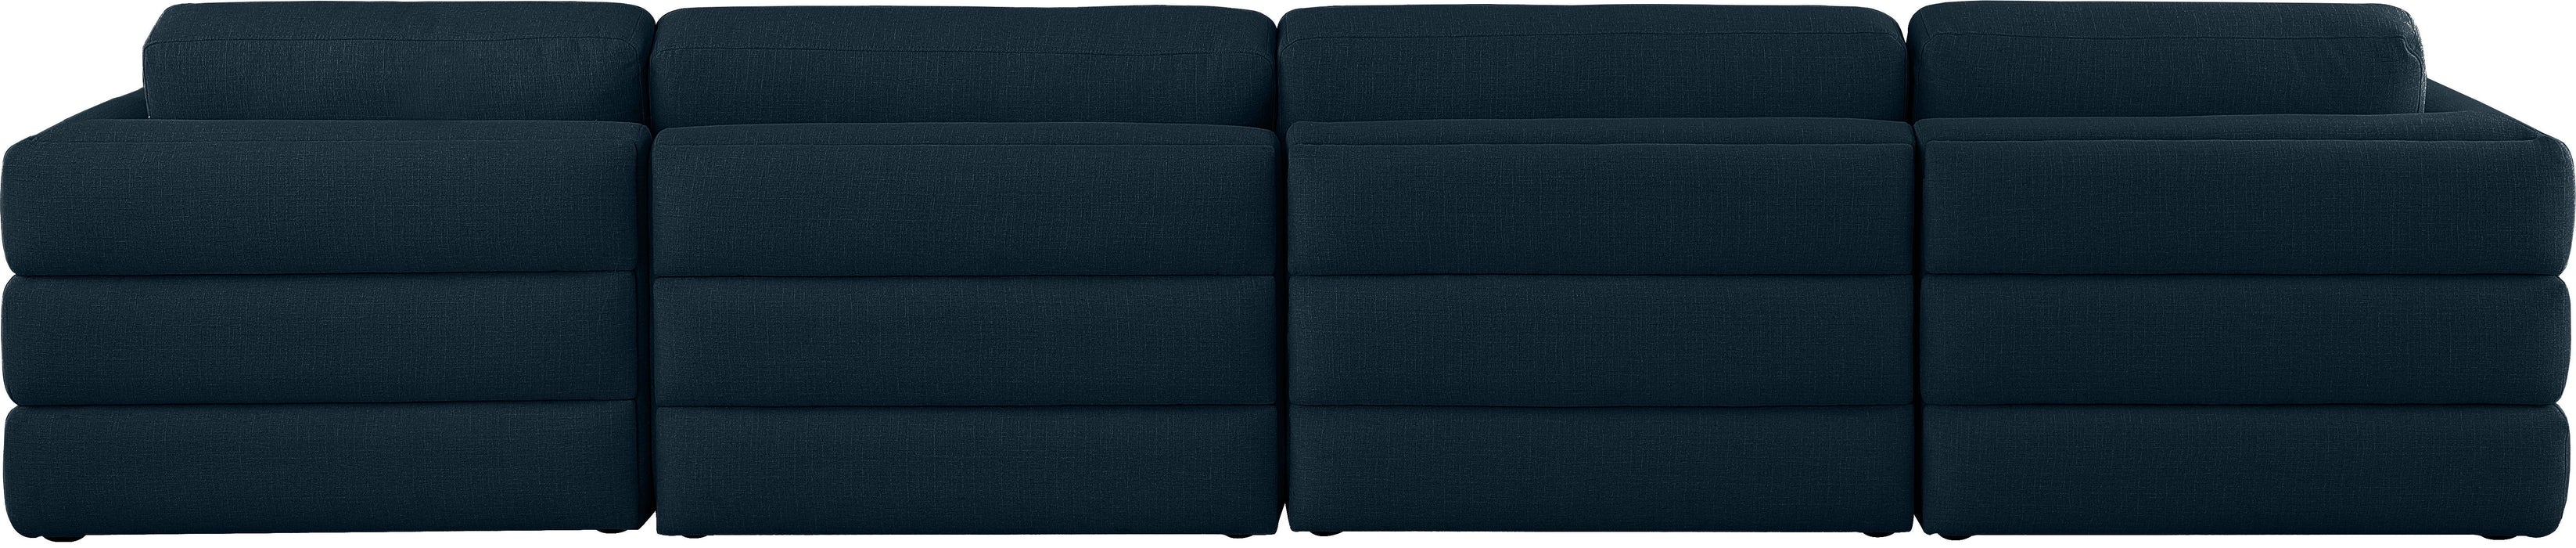 Beckham - Modular Sofa 4 Seats - Navy